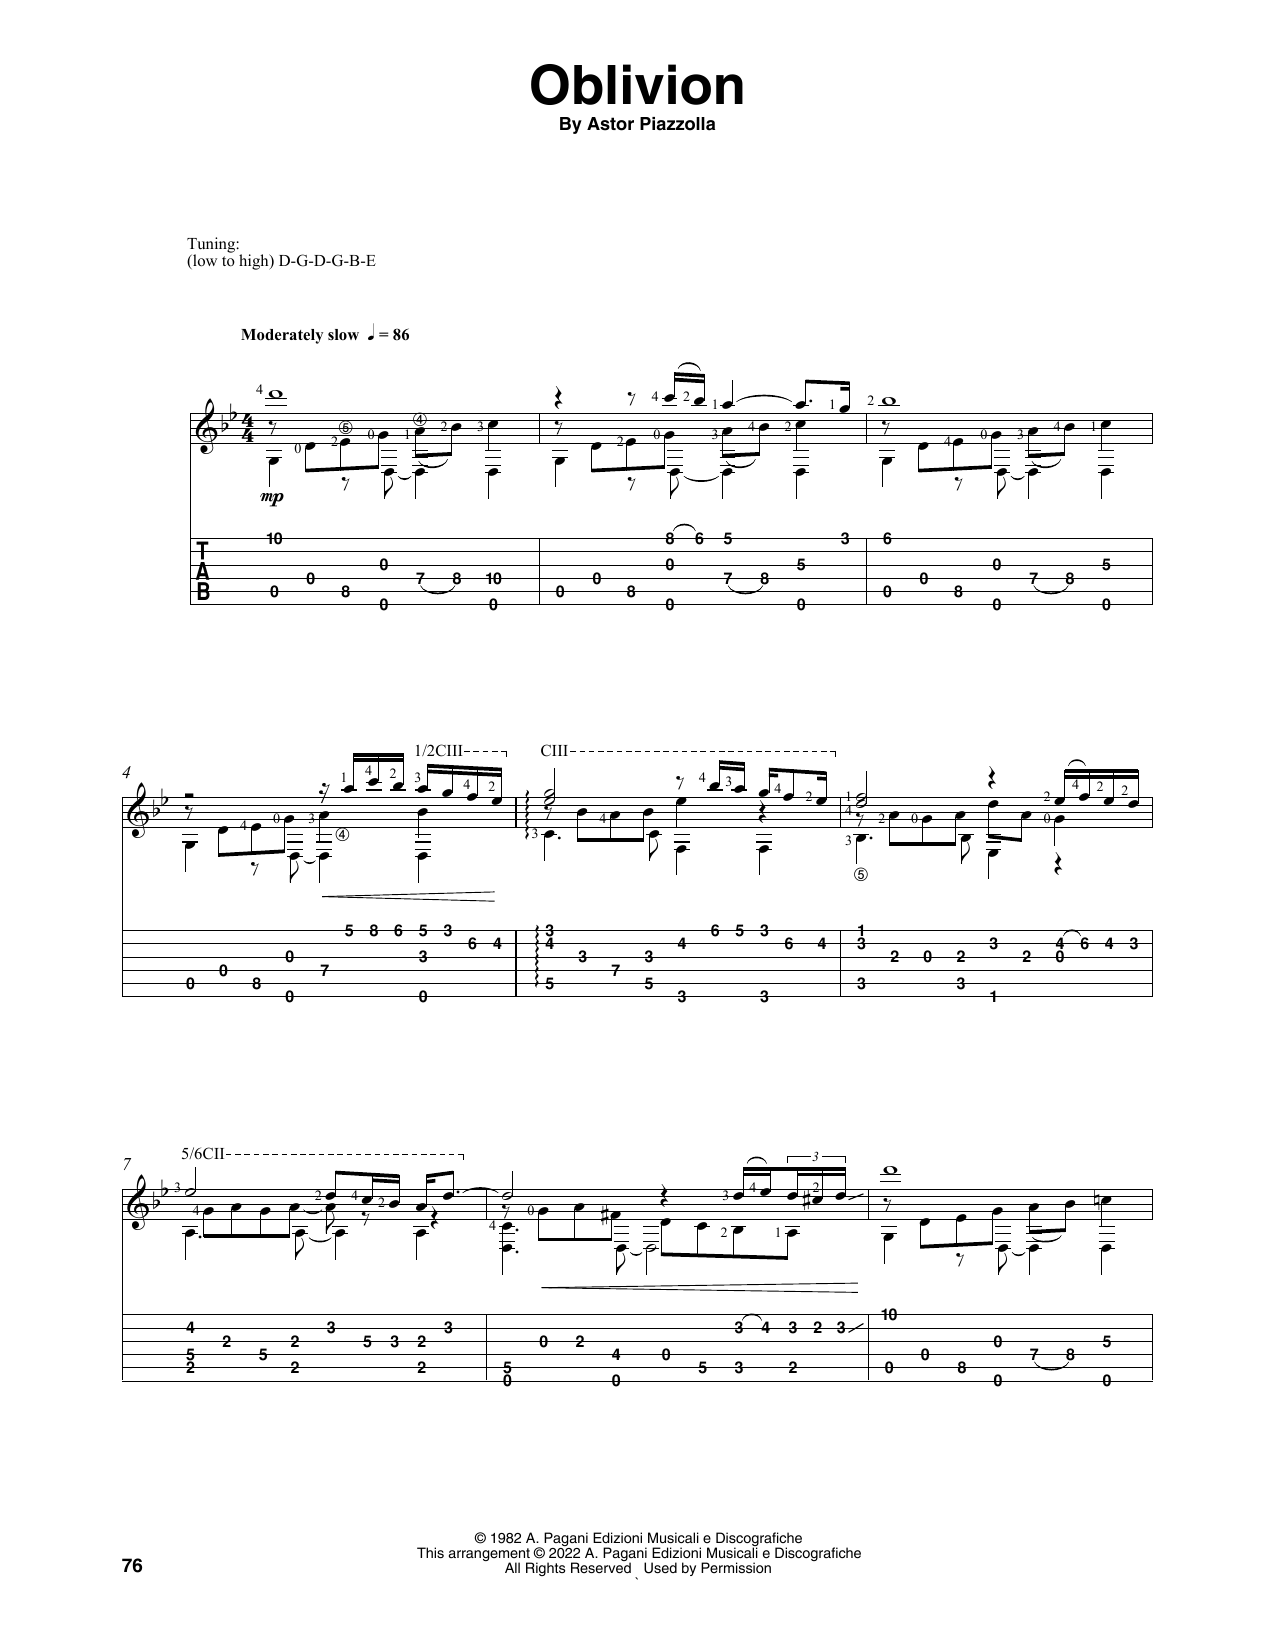 Astor Piazzolla Oblivion (arr. Celil Refik Kaya) Sheet Music Notes & Chords for Solo Guitar - Download or Print PDF